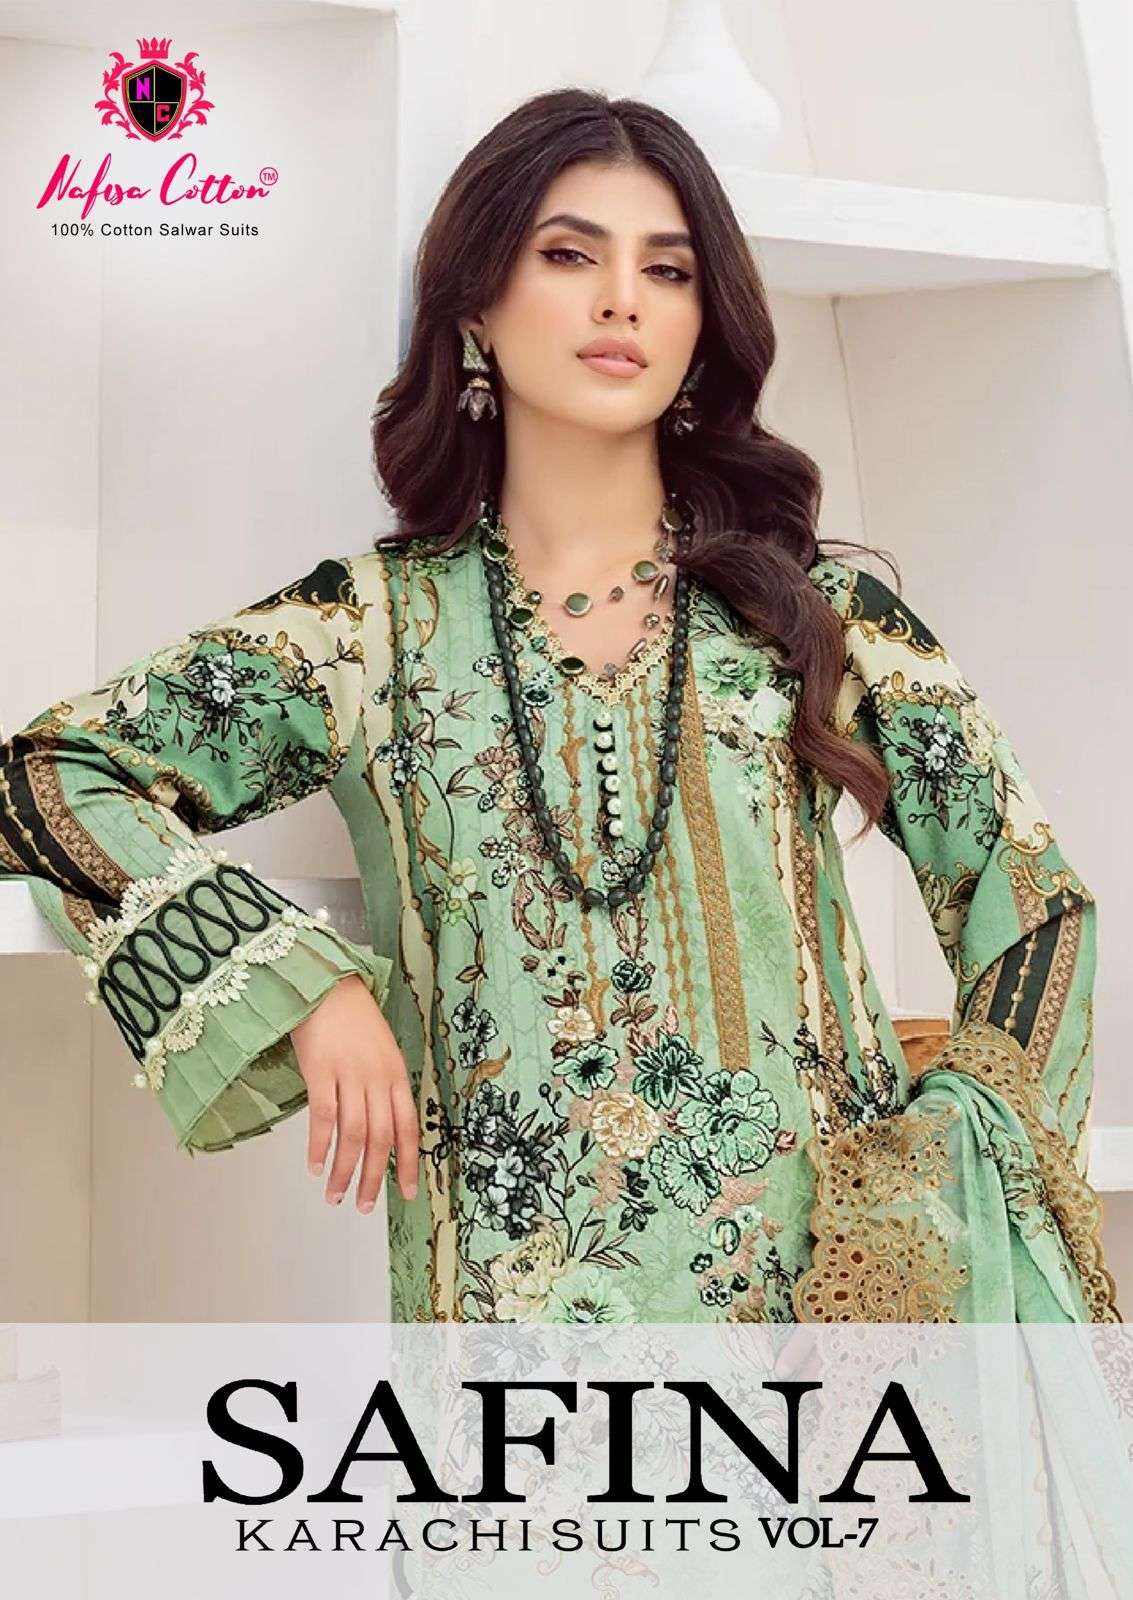 Nafisa Cotton Safina Vol 7 Cotton Karachi Suit Catalog Exporters